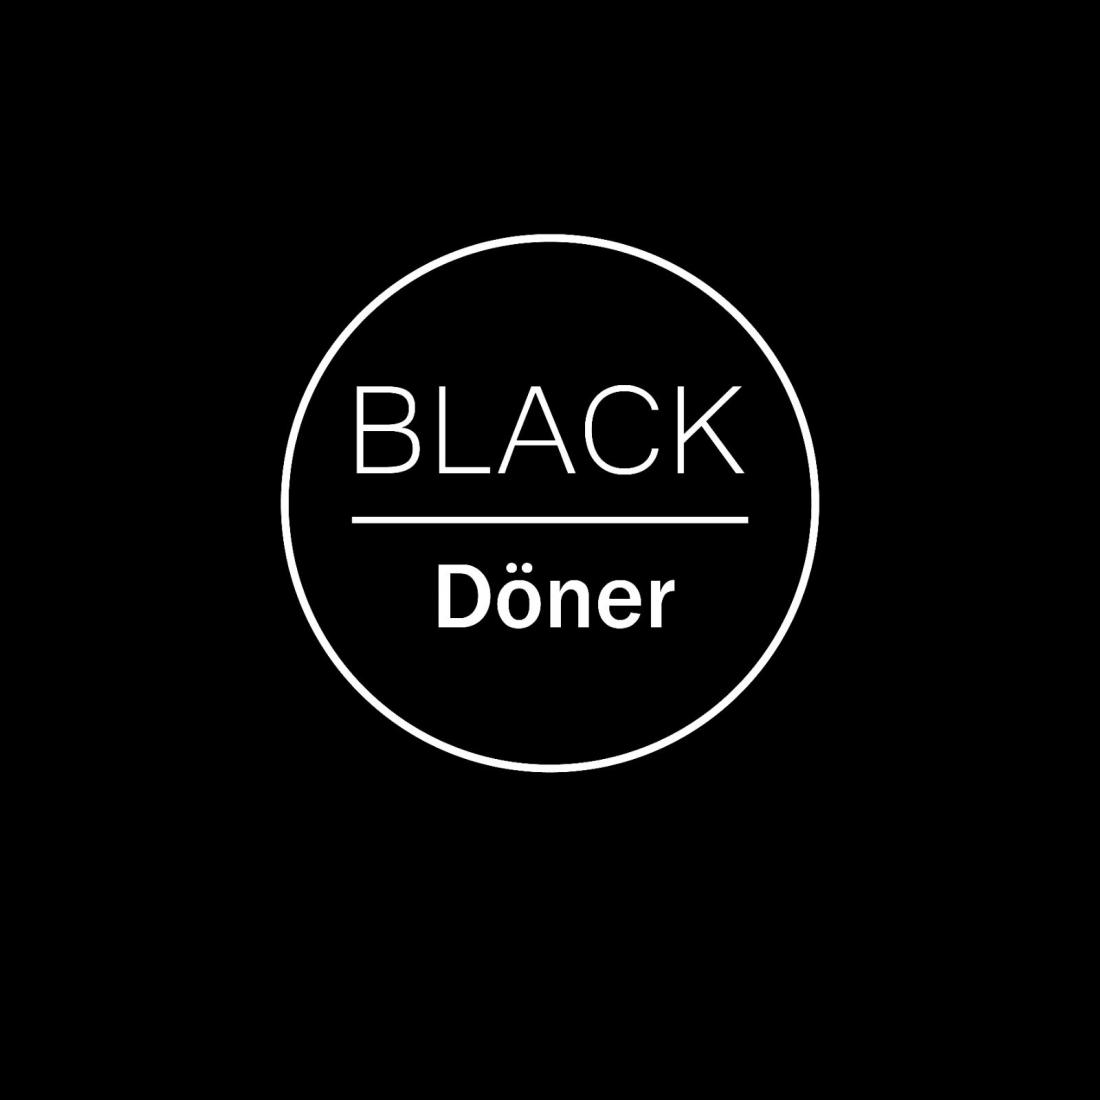 Сеты с донером, чикенбургером и наггетсами от 7,75 руб. в кафе "Black doner"